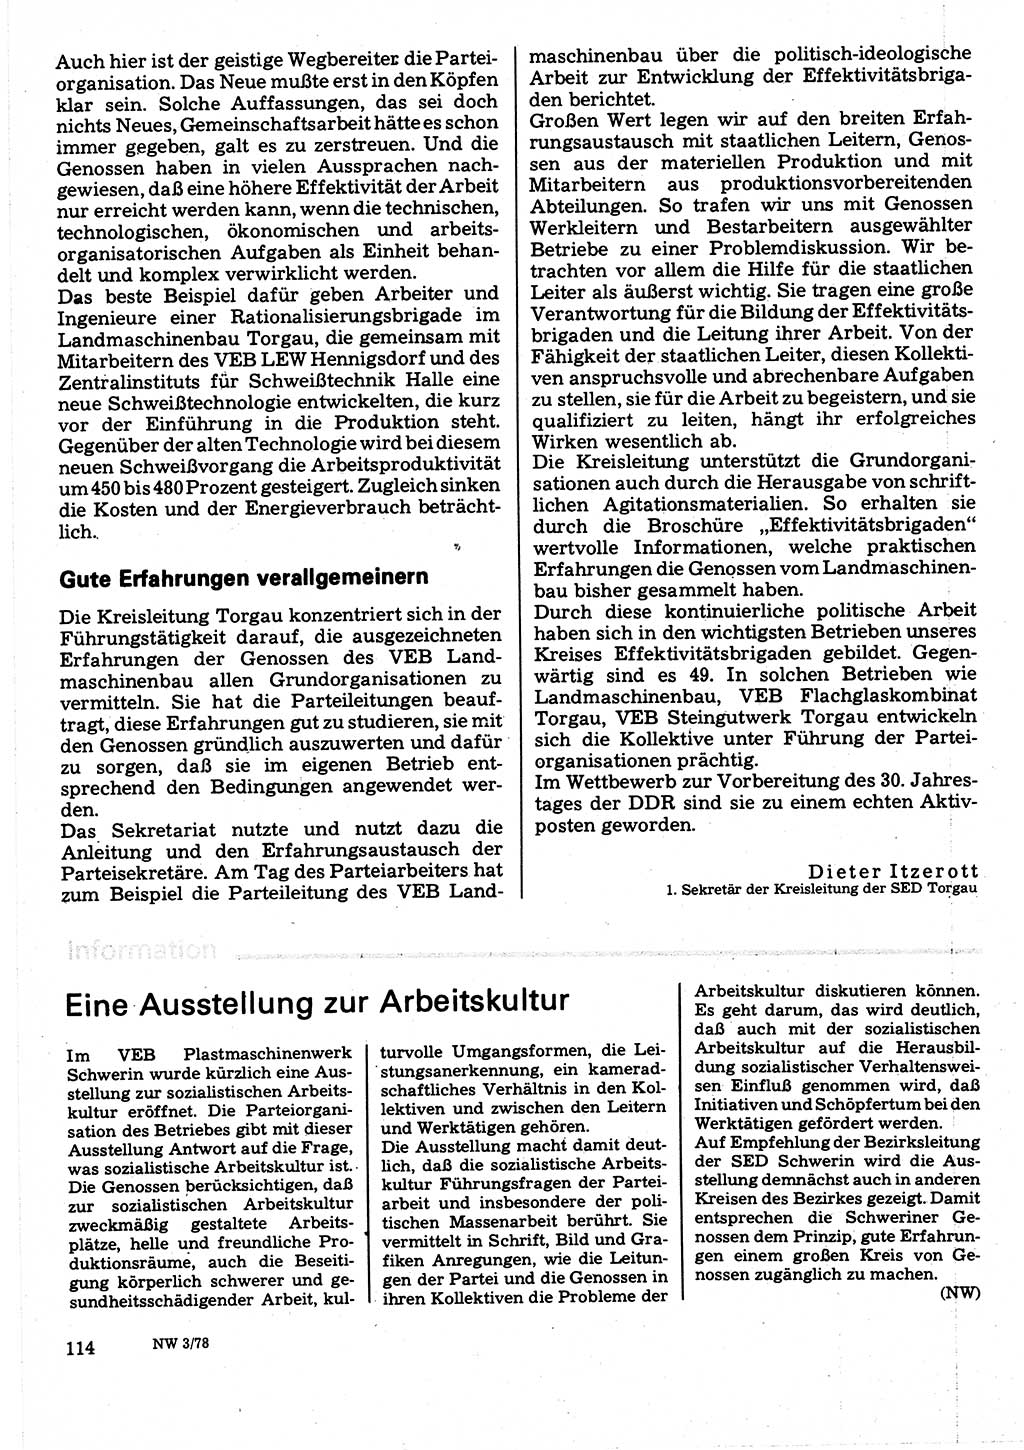 Neuer Weg (NW), Organ des Zentralkomitees (ZK) der SED (Sozialistische Einheitspartei Deutschlands) für Fragen des Parteilebens, 33. Jahrgang [Deutsche Demokratische Republik (DDR)] 1978, Seite 114 (NW ZK SED DDR 1978, S. 114)